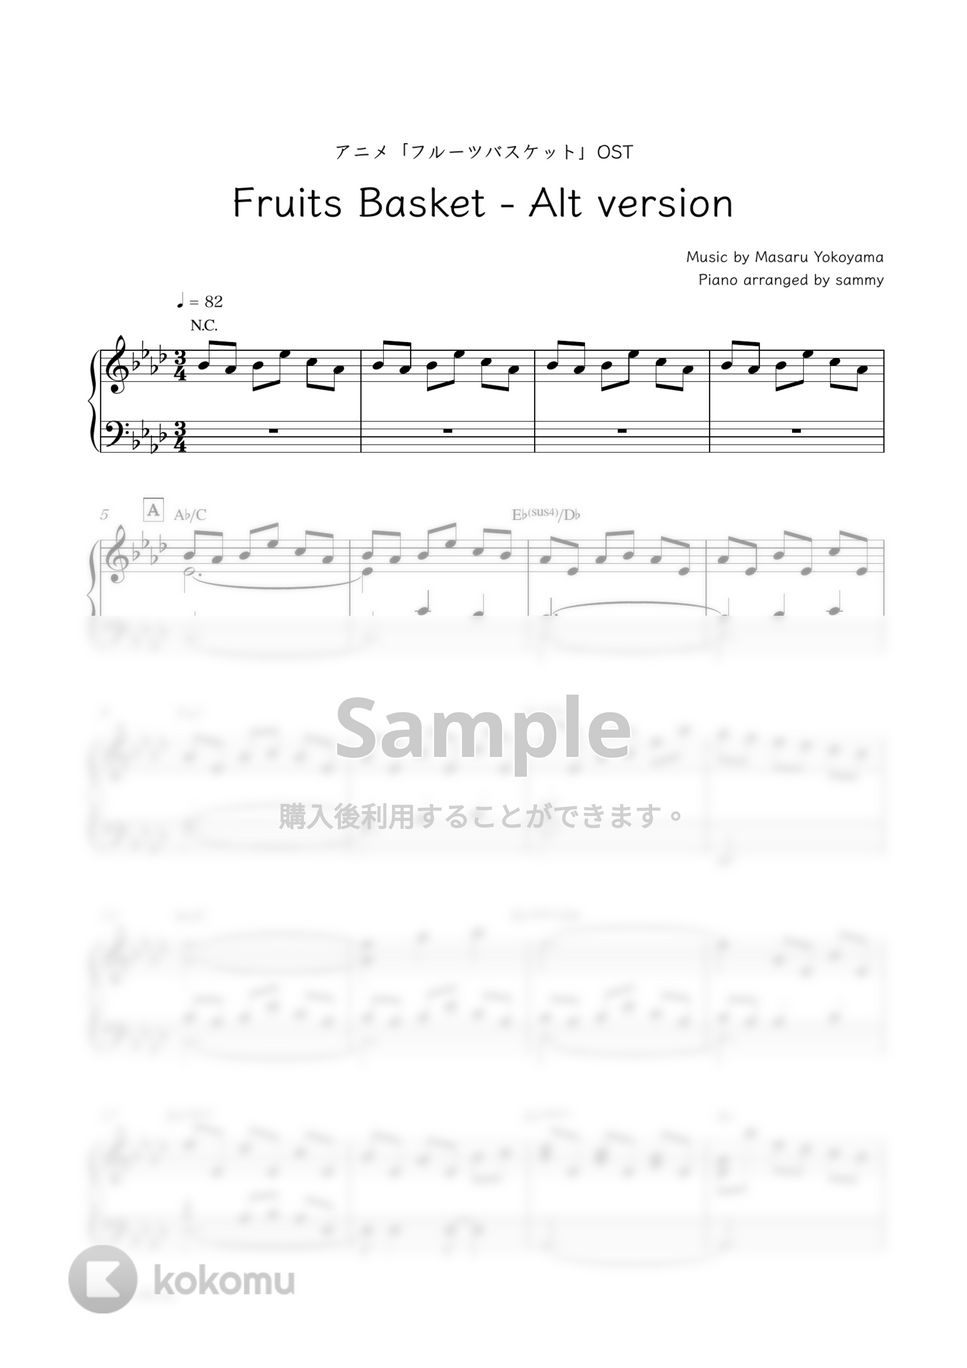 アニメ『フルーツバスケット』OST - Fruits Basket - Alt version by sammy